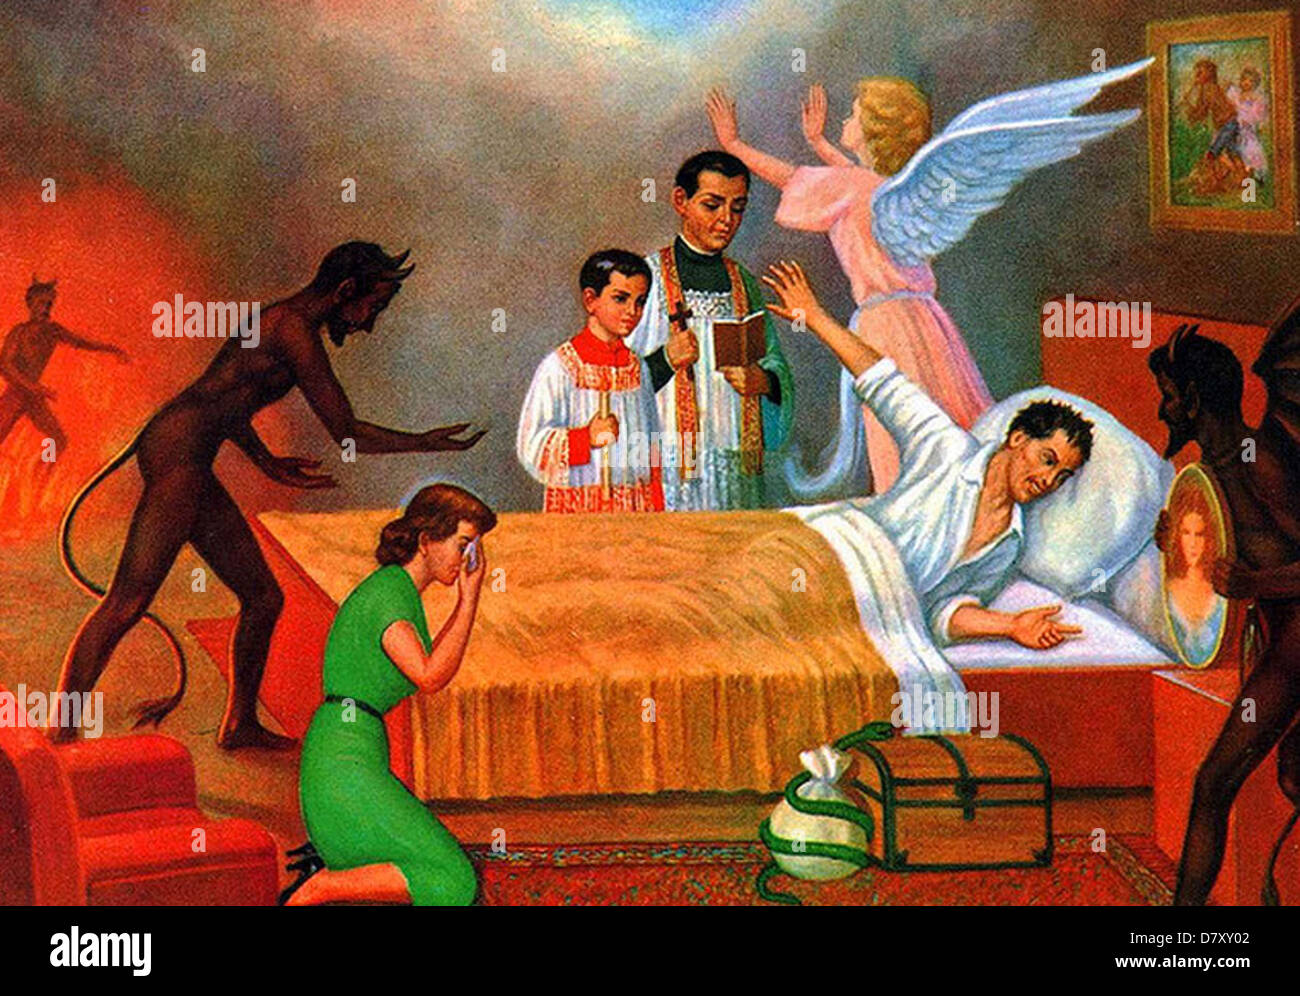 MEXIKANISCHE Postkarte 1952 zeigt einen Mann auf seinem Sterbebett vor Versuchung in seine Sünden bekennen Stockfoto